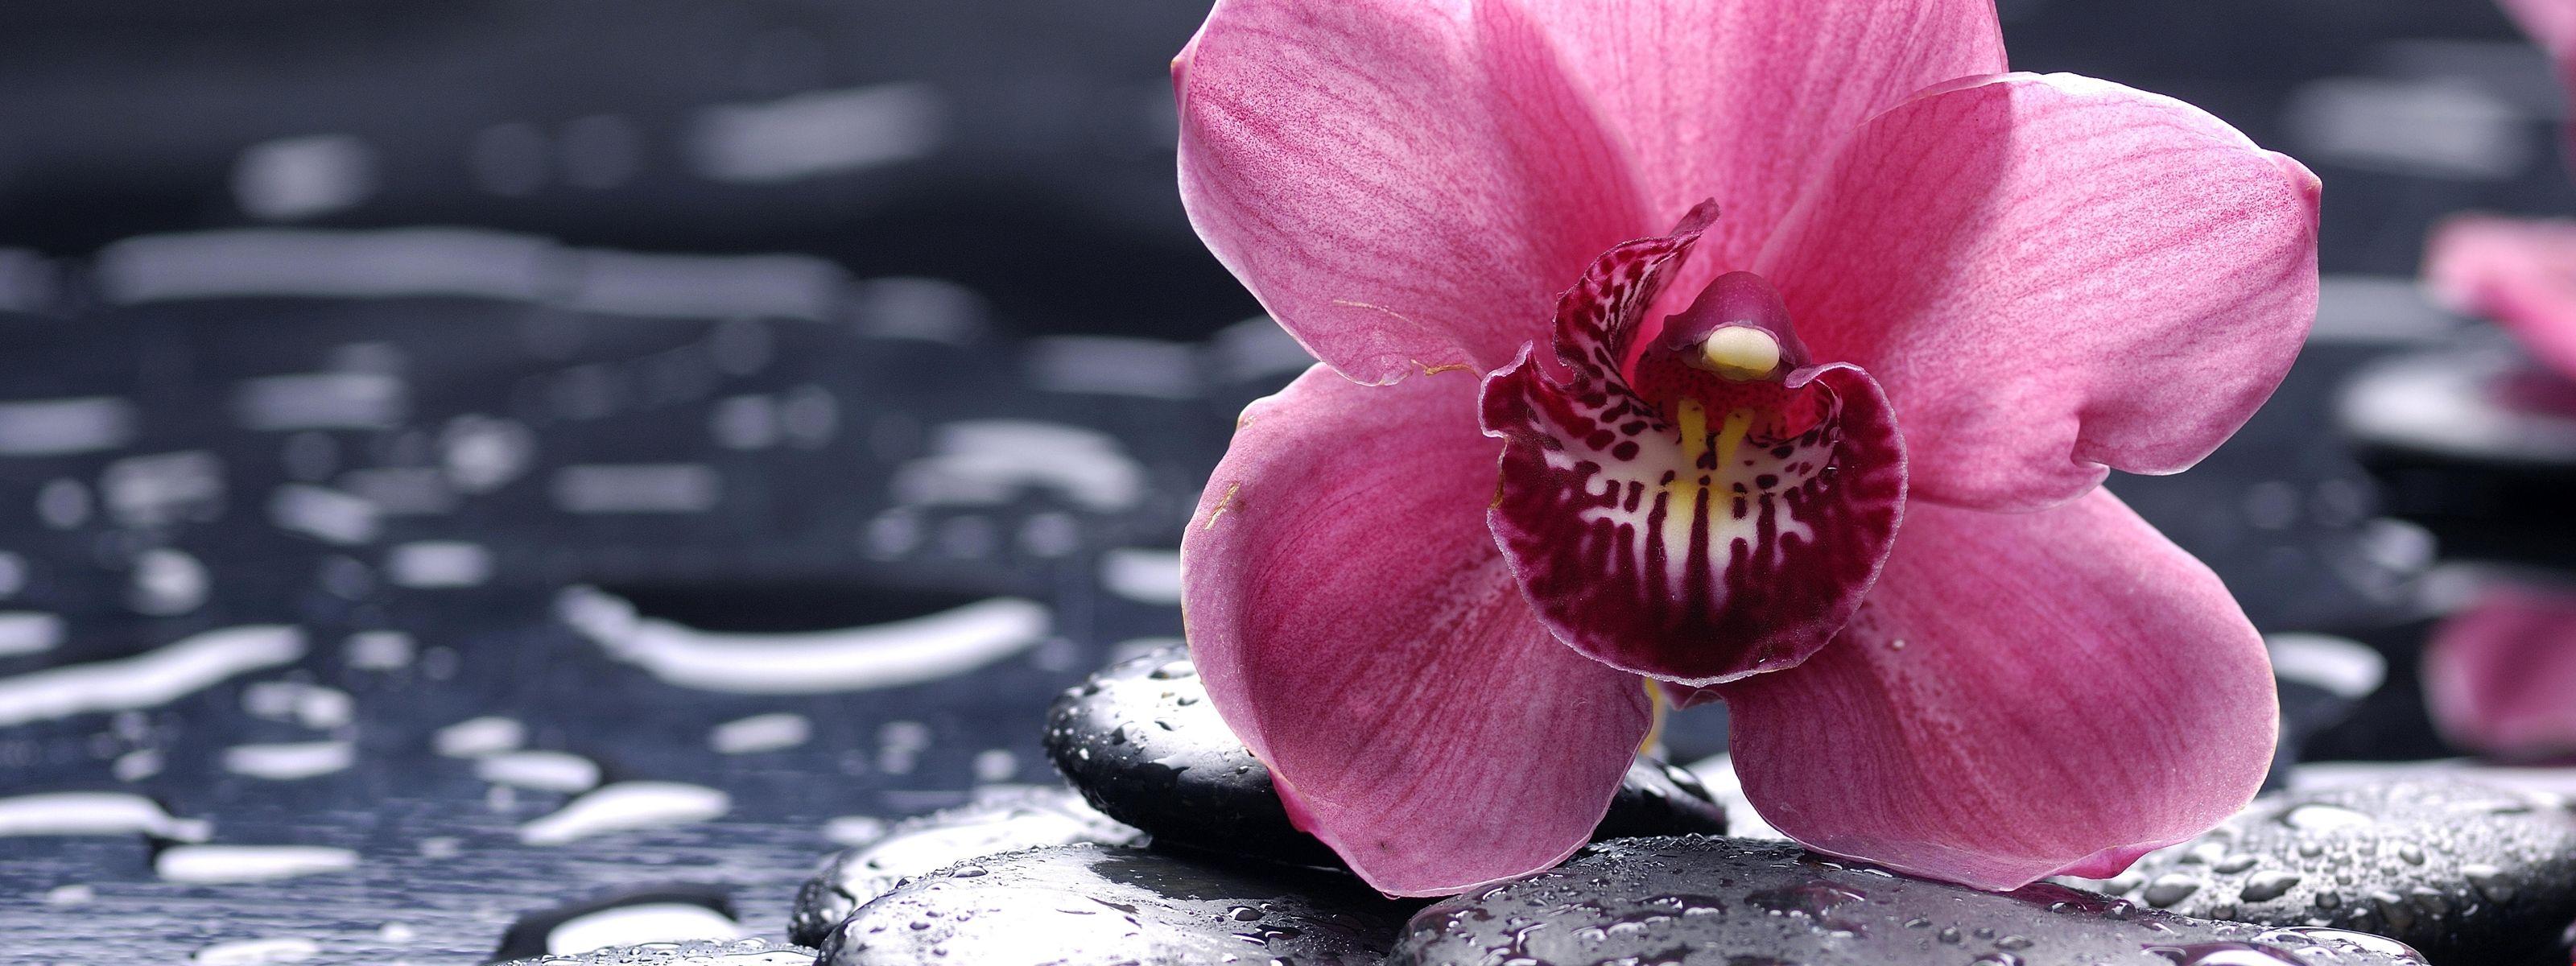 Orchid, 5k, 4k wallpaper, 8k, HD, flowers, drops, pink. HD